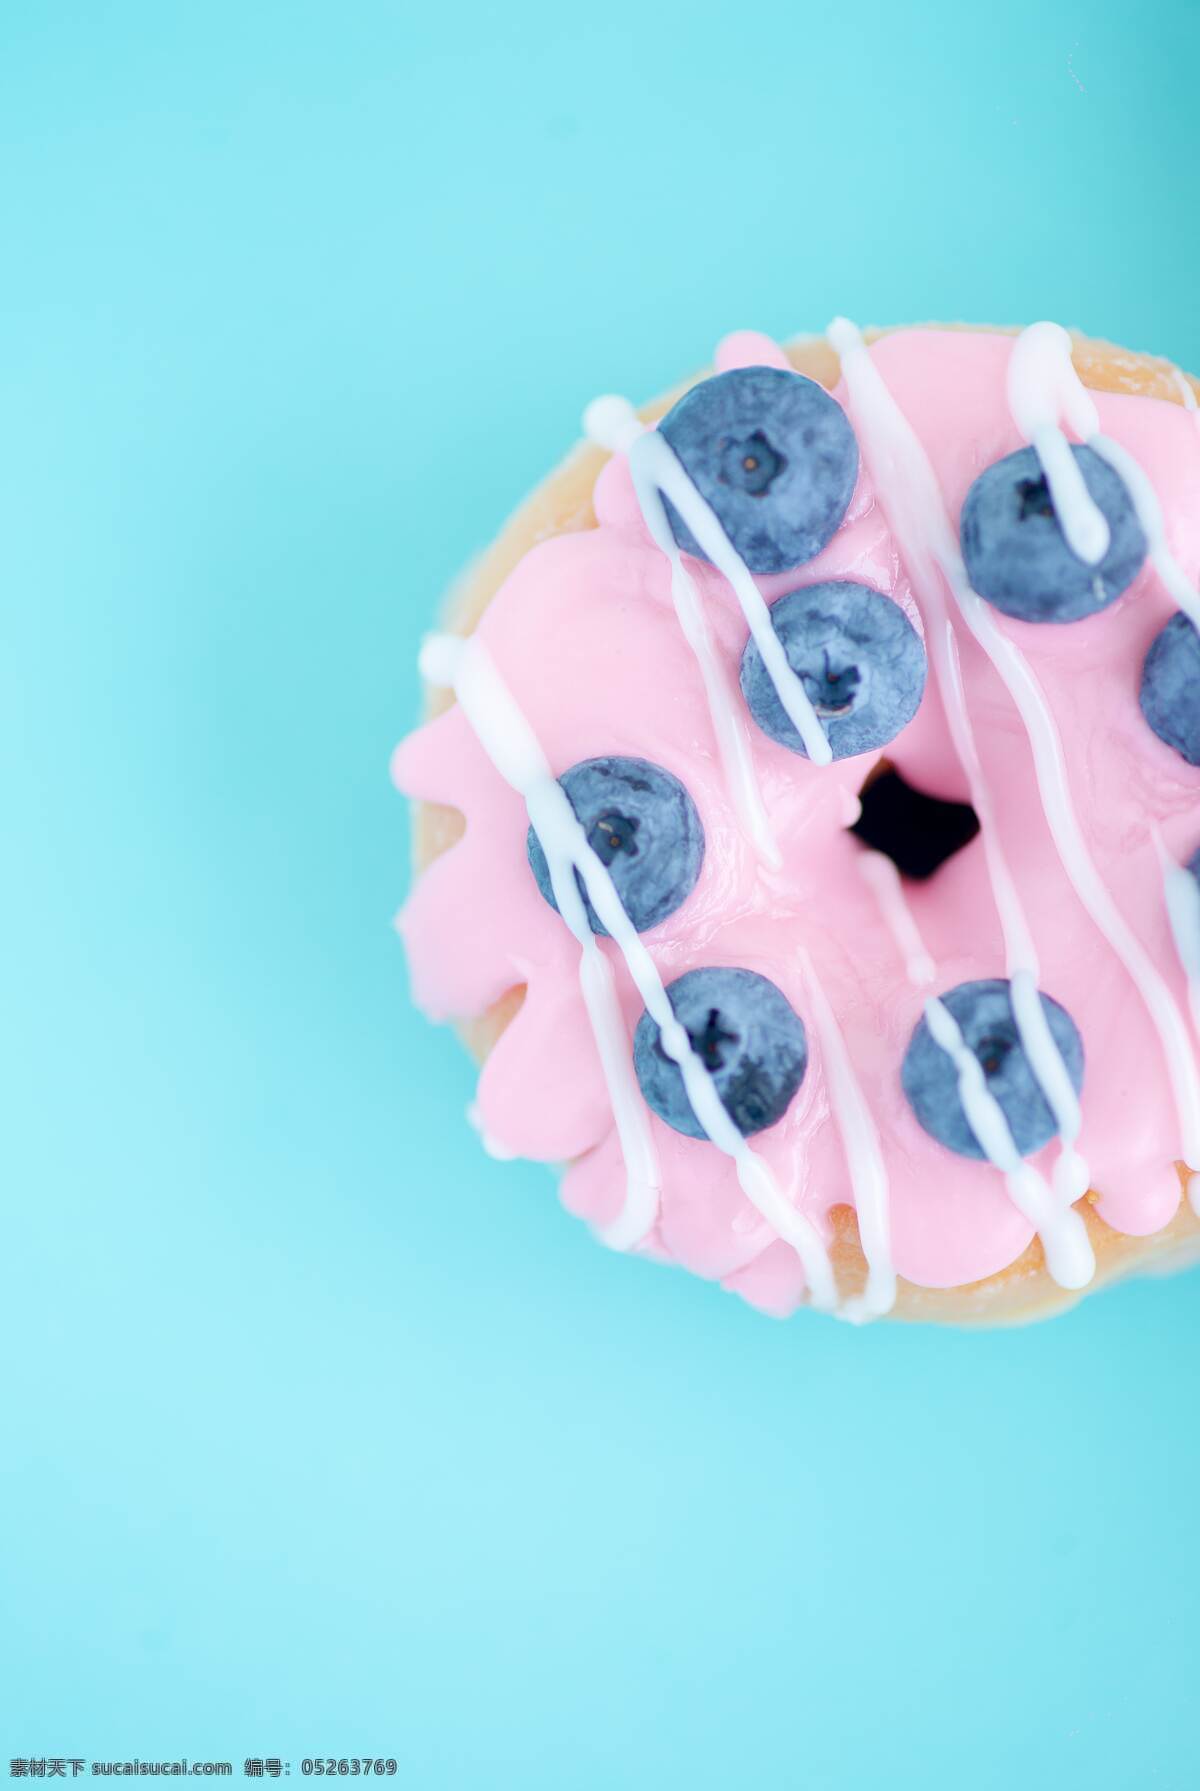 甜甜圈 马卡龙色调 小清新素材 蓝莓 蓝色背景素材 纯色素材背景 生活百科 生活素材